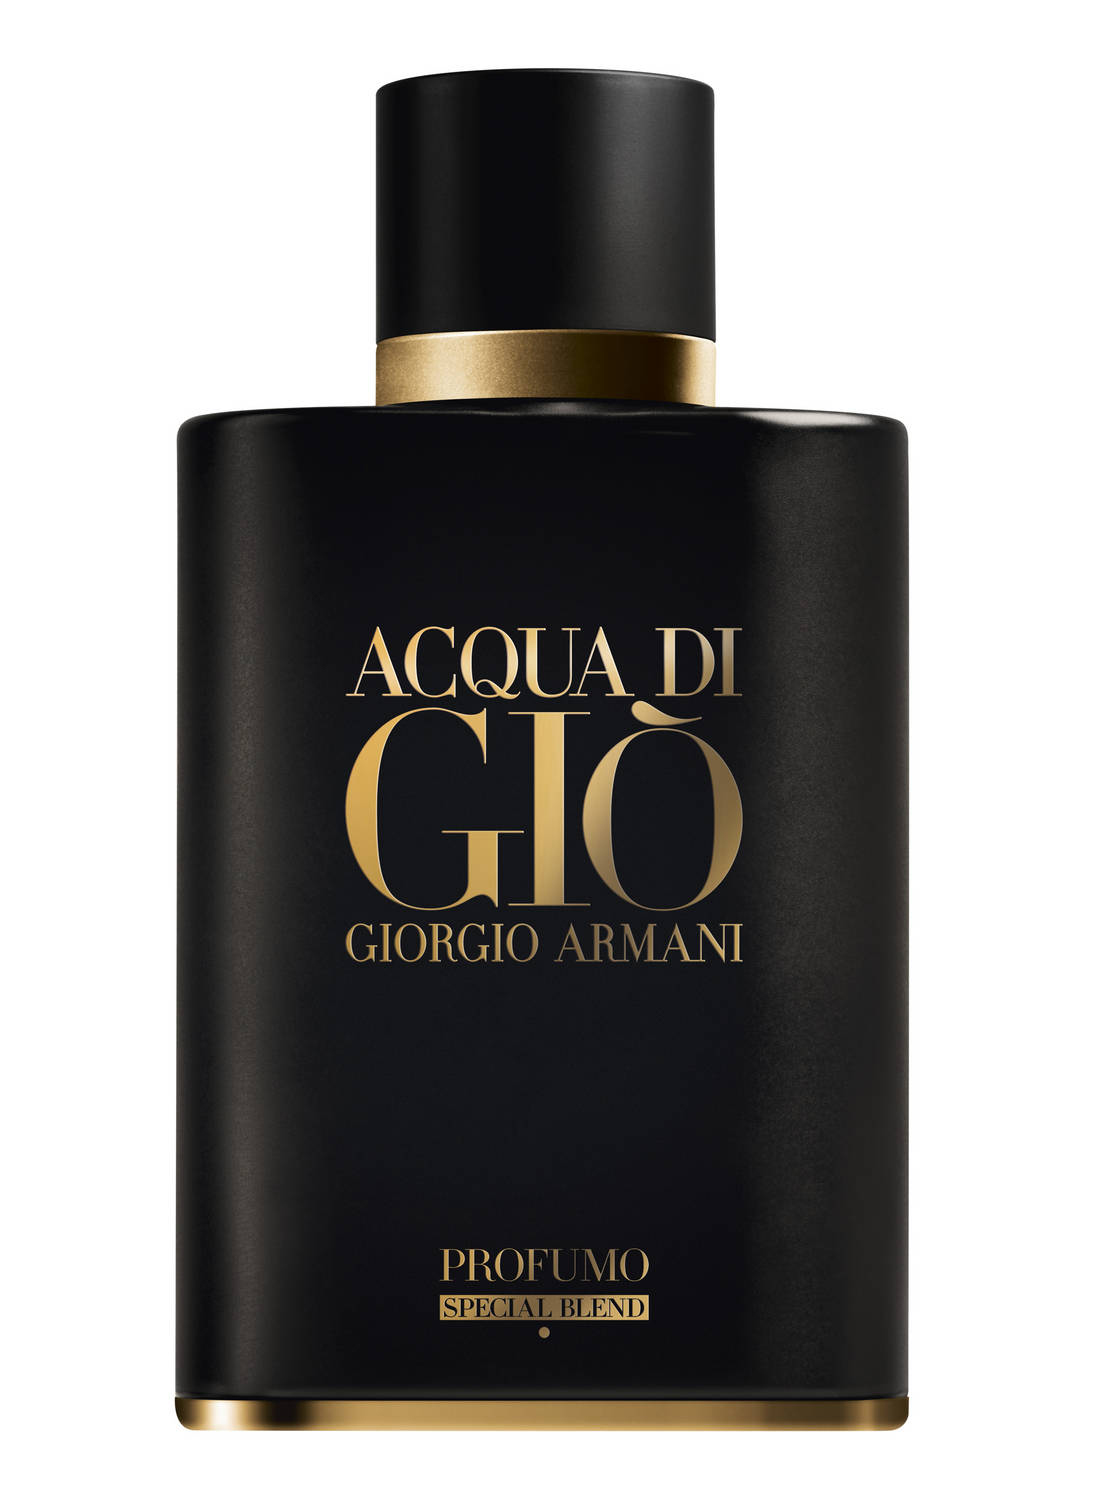 Acqua di Gio Profumo Special Blend Armani cologne a new